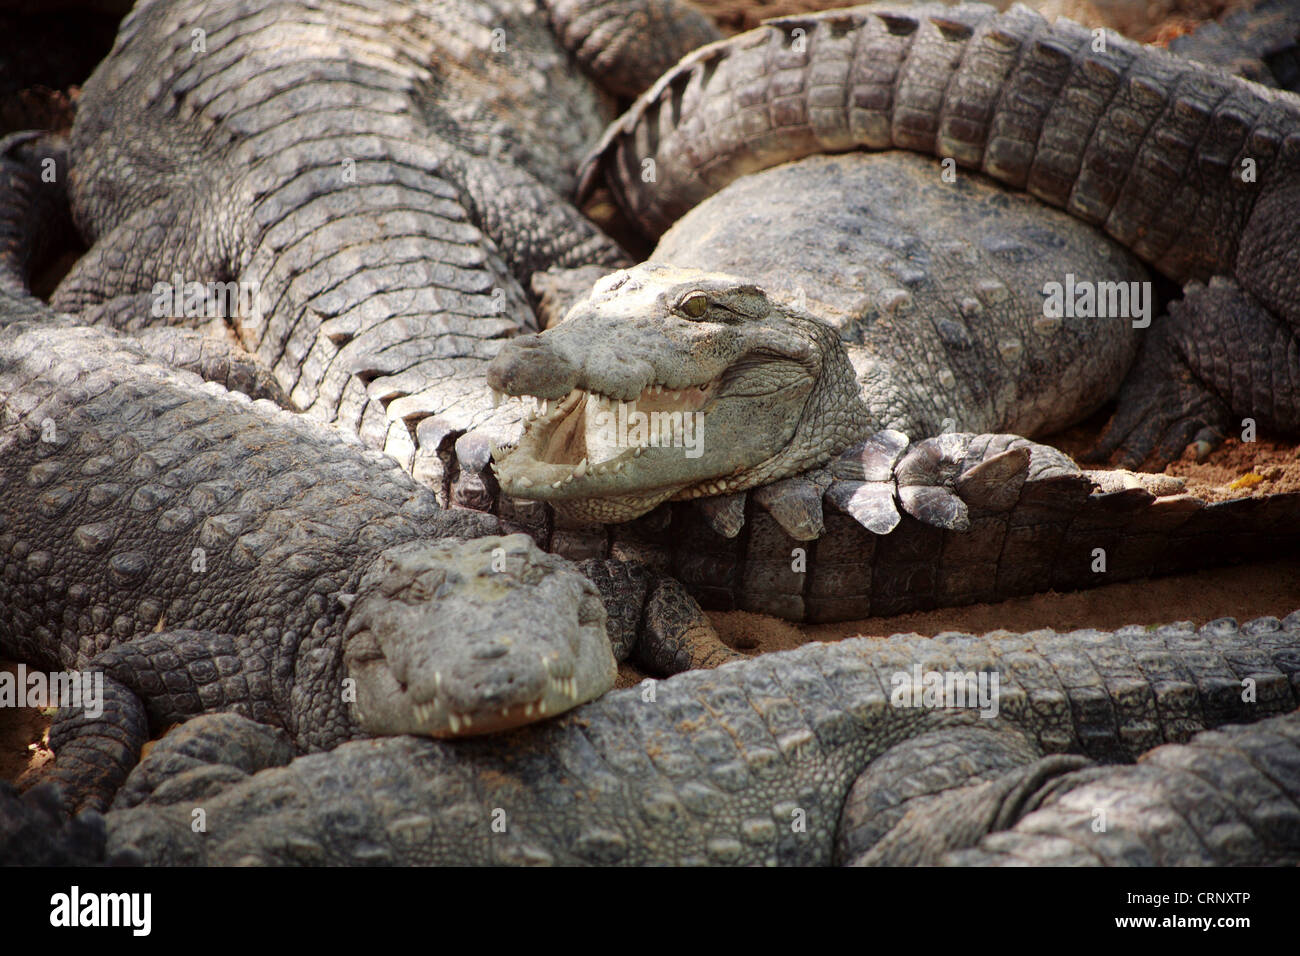 Groupe d'agresseur ou crocodiles Crocodylus palustris, des crocodiles. Banque D'Images